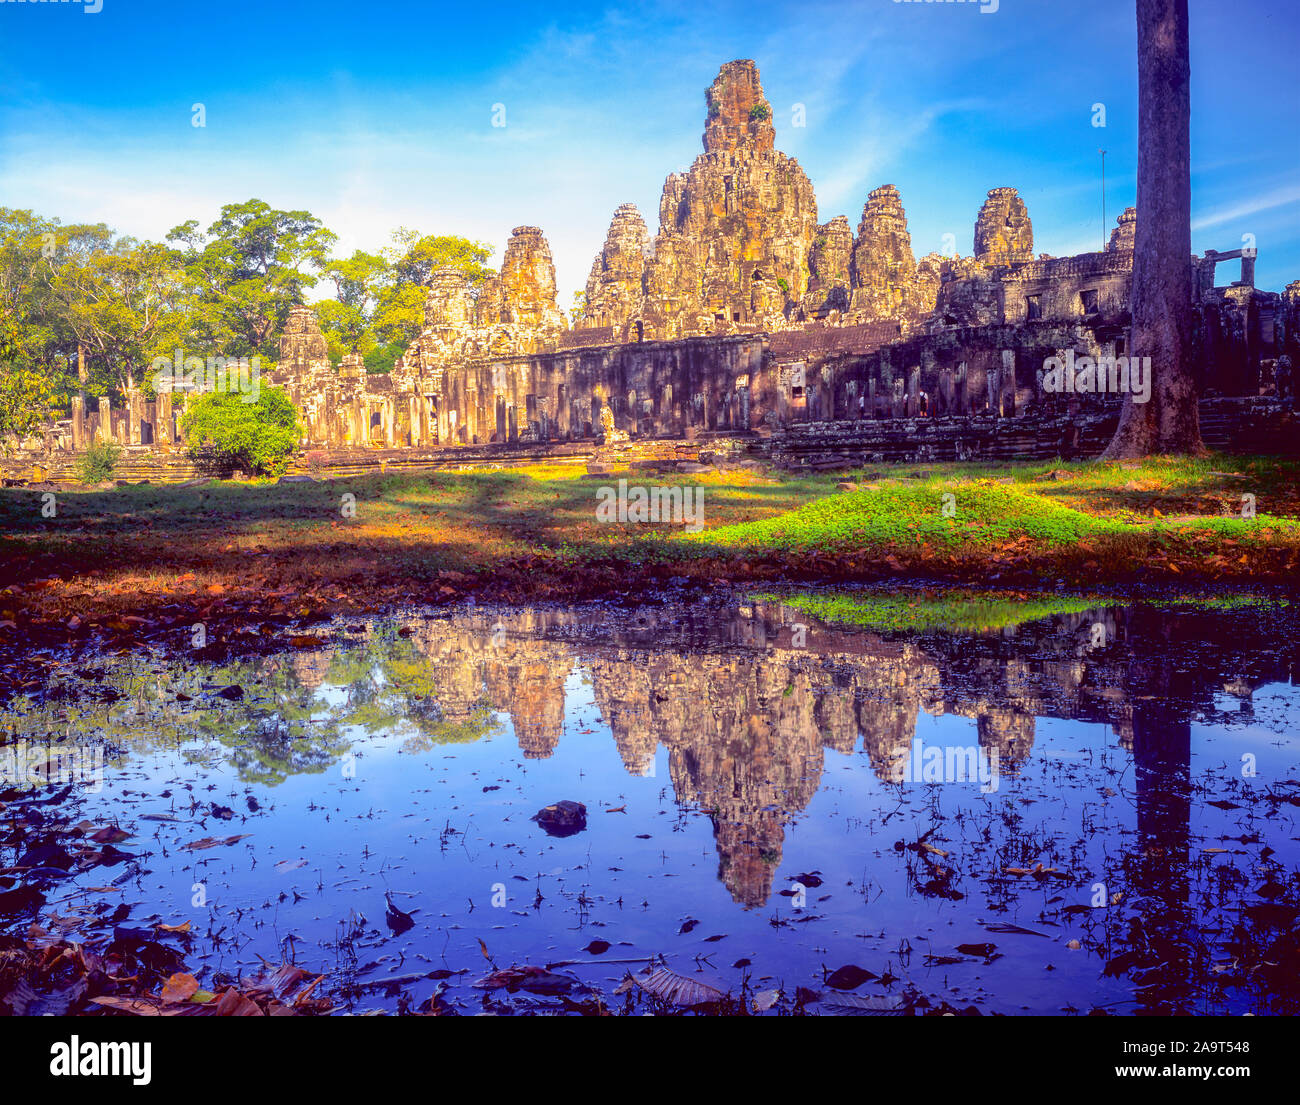 Templo Bayon relections, Angkor Watt Acheological Park, Camboya, la ciudad de Angkor Thom construido 100-1200 AD la cultura KHmer ruinas en la selva del sudeste asiático- Foto de stock